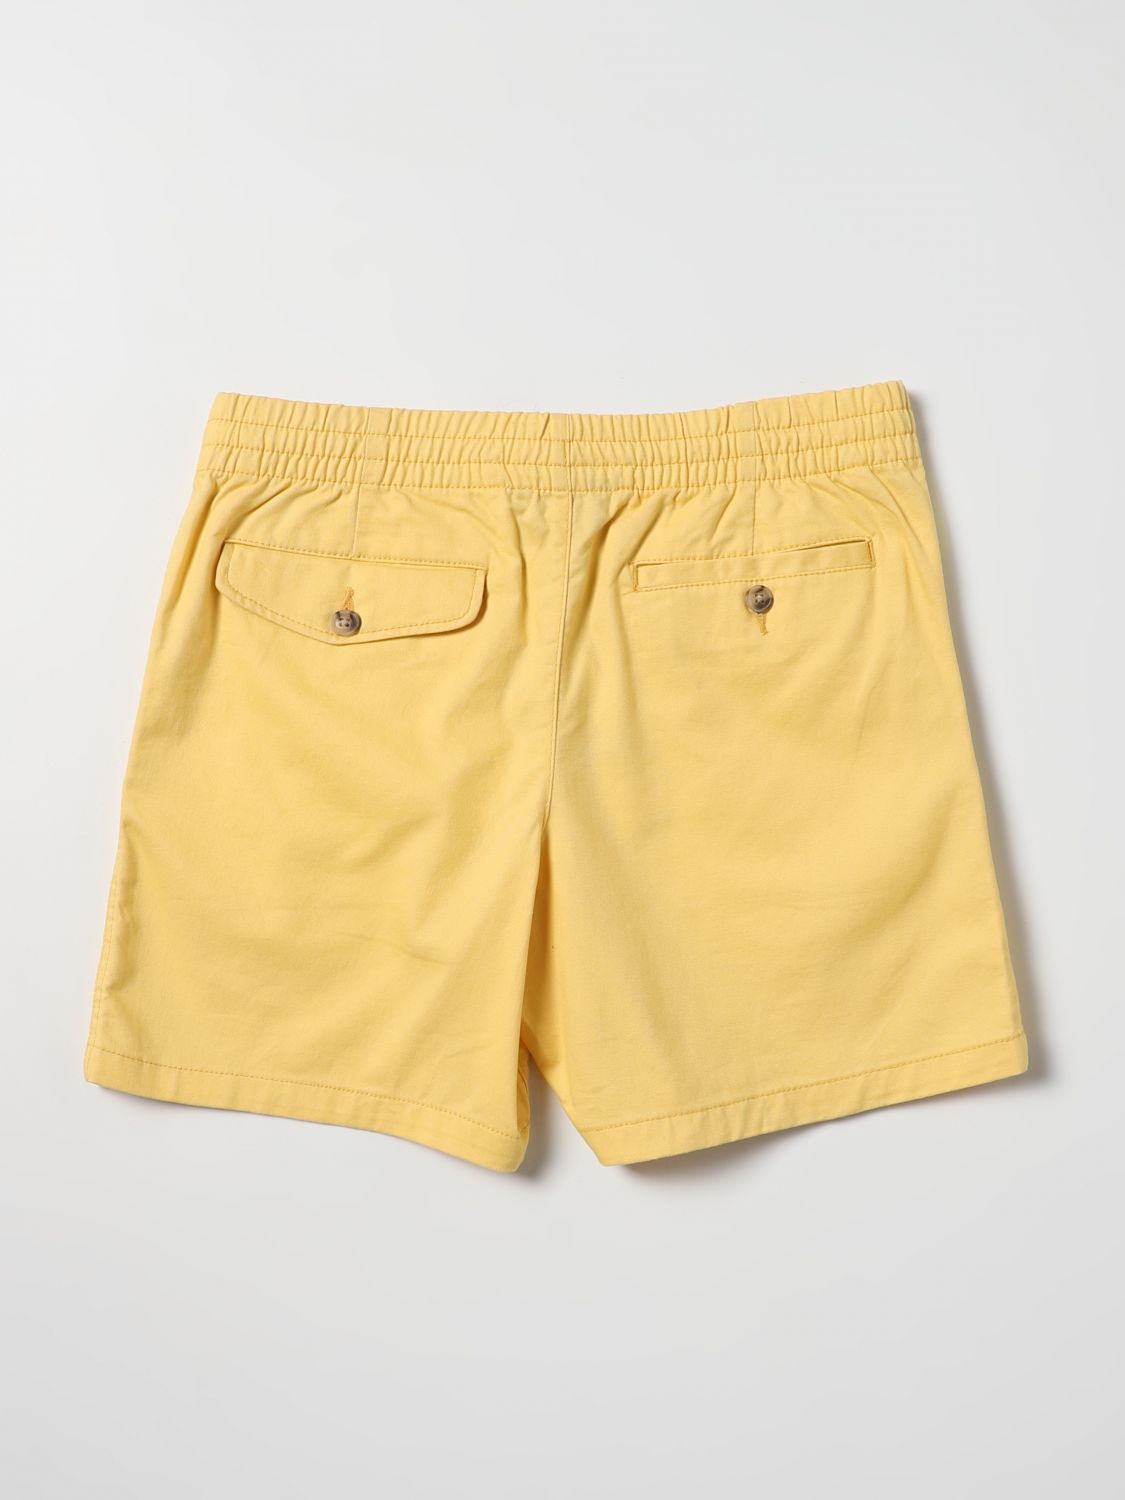 Pantaloncino Polo Ralph Lauren: Pantaloncino Polo Ralph Lauren bambino giallo 2